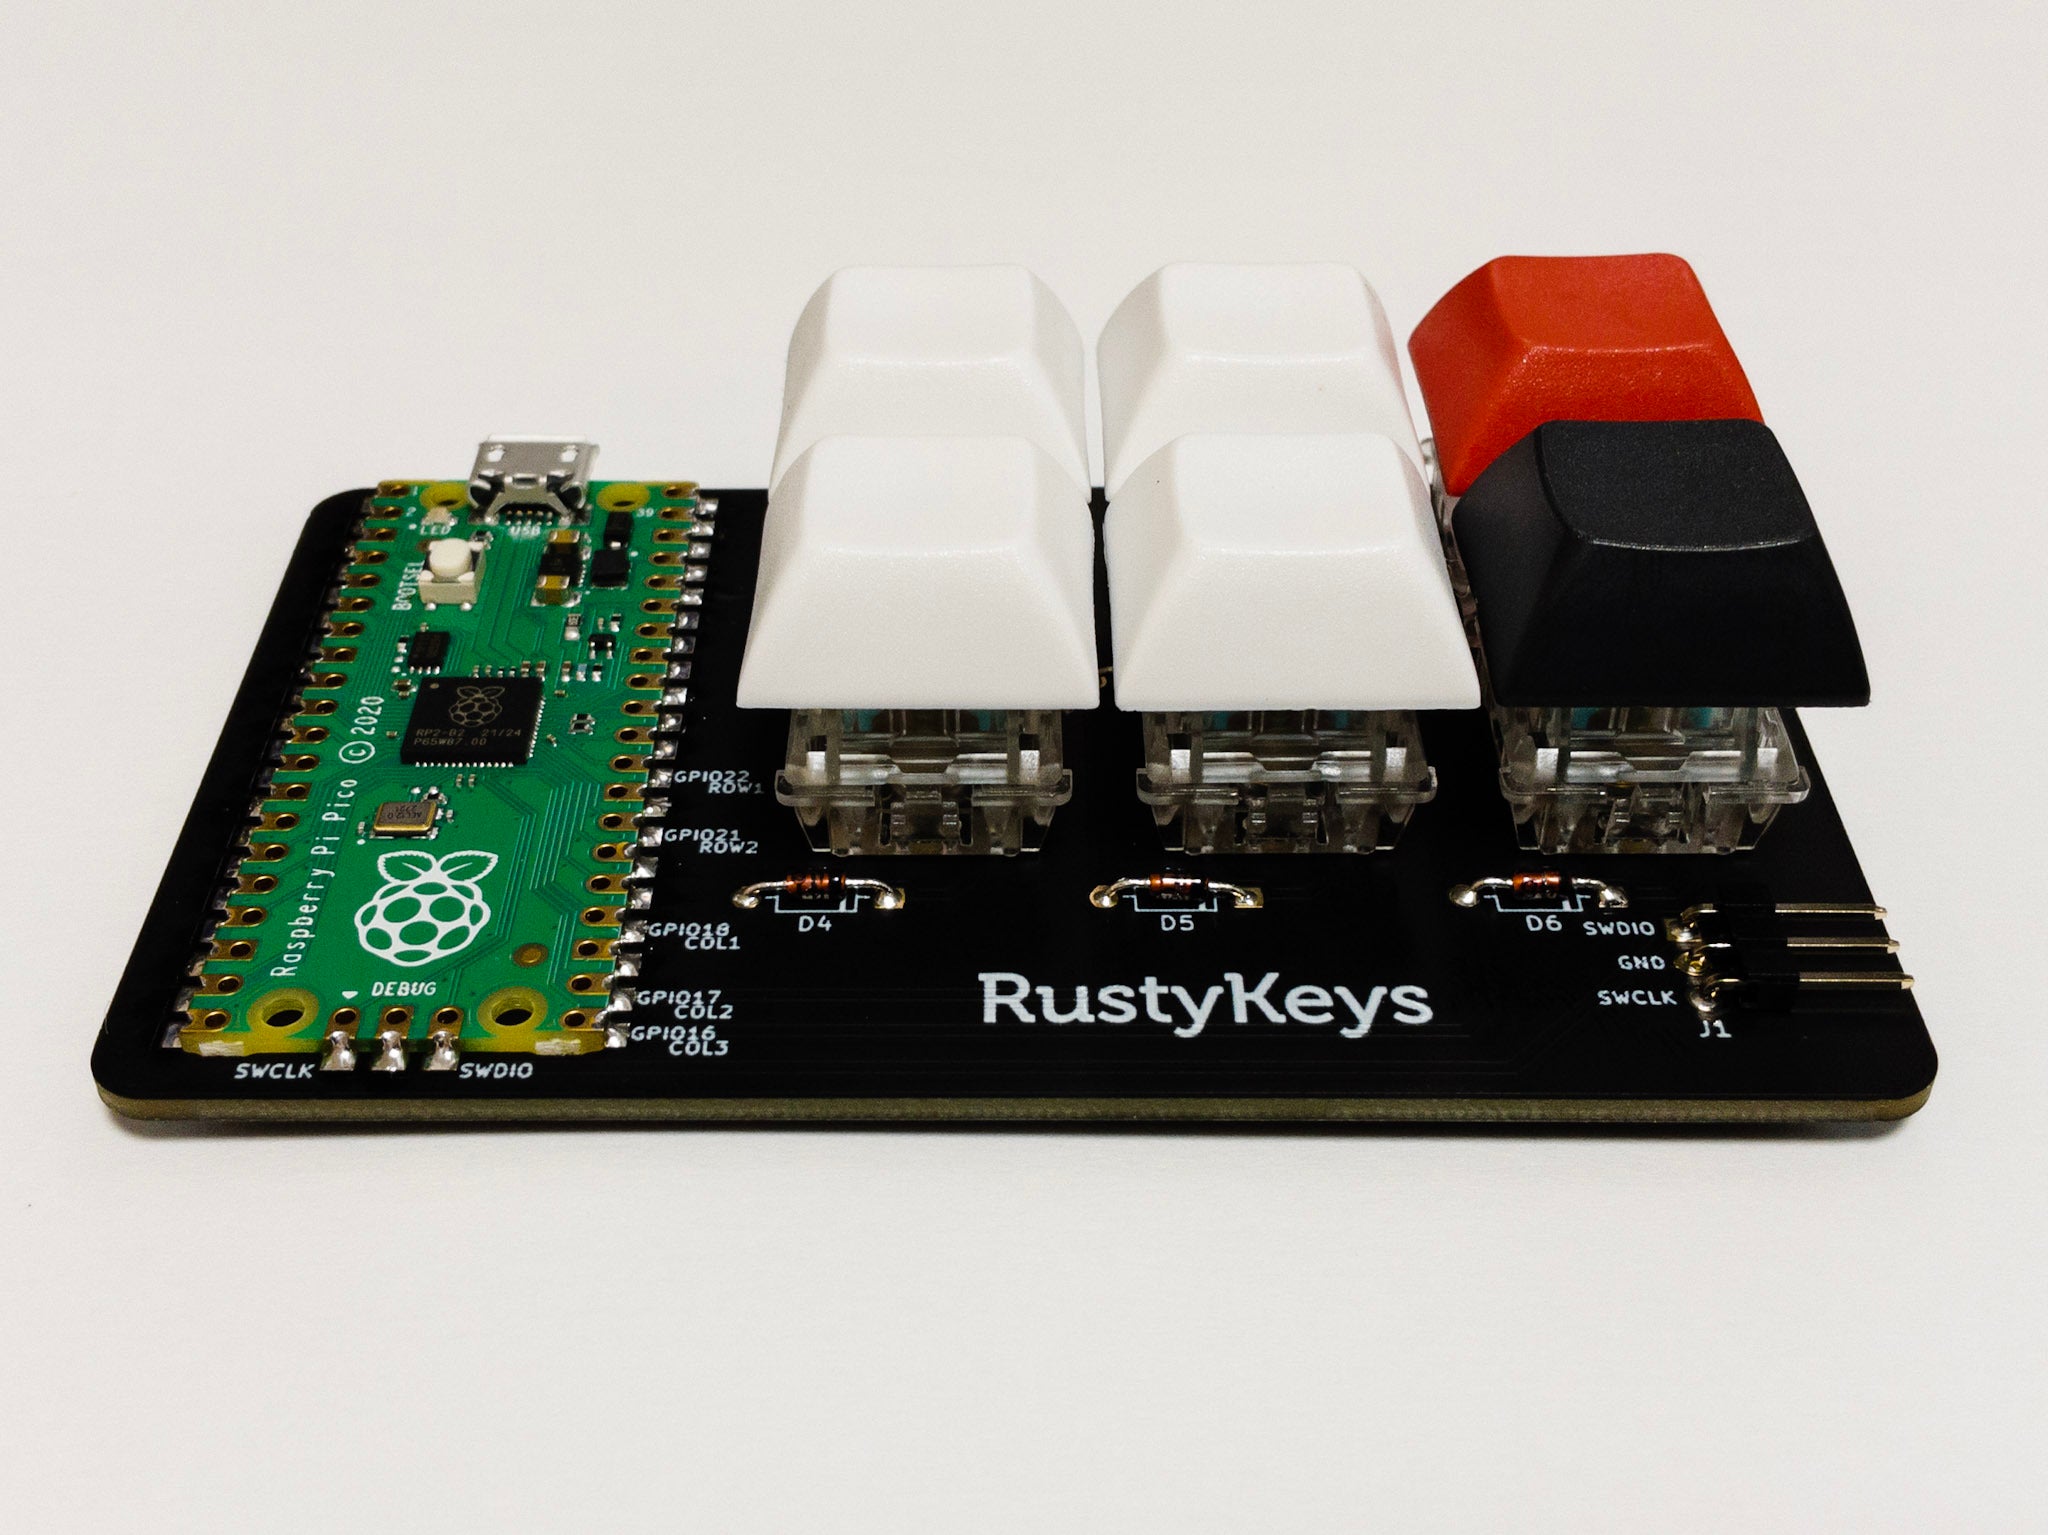 RustyKeys は、組込み Rust 入門に最適な1台を目指して開発された自作キーボードのキットです。